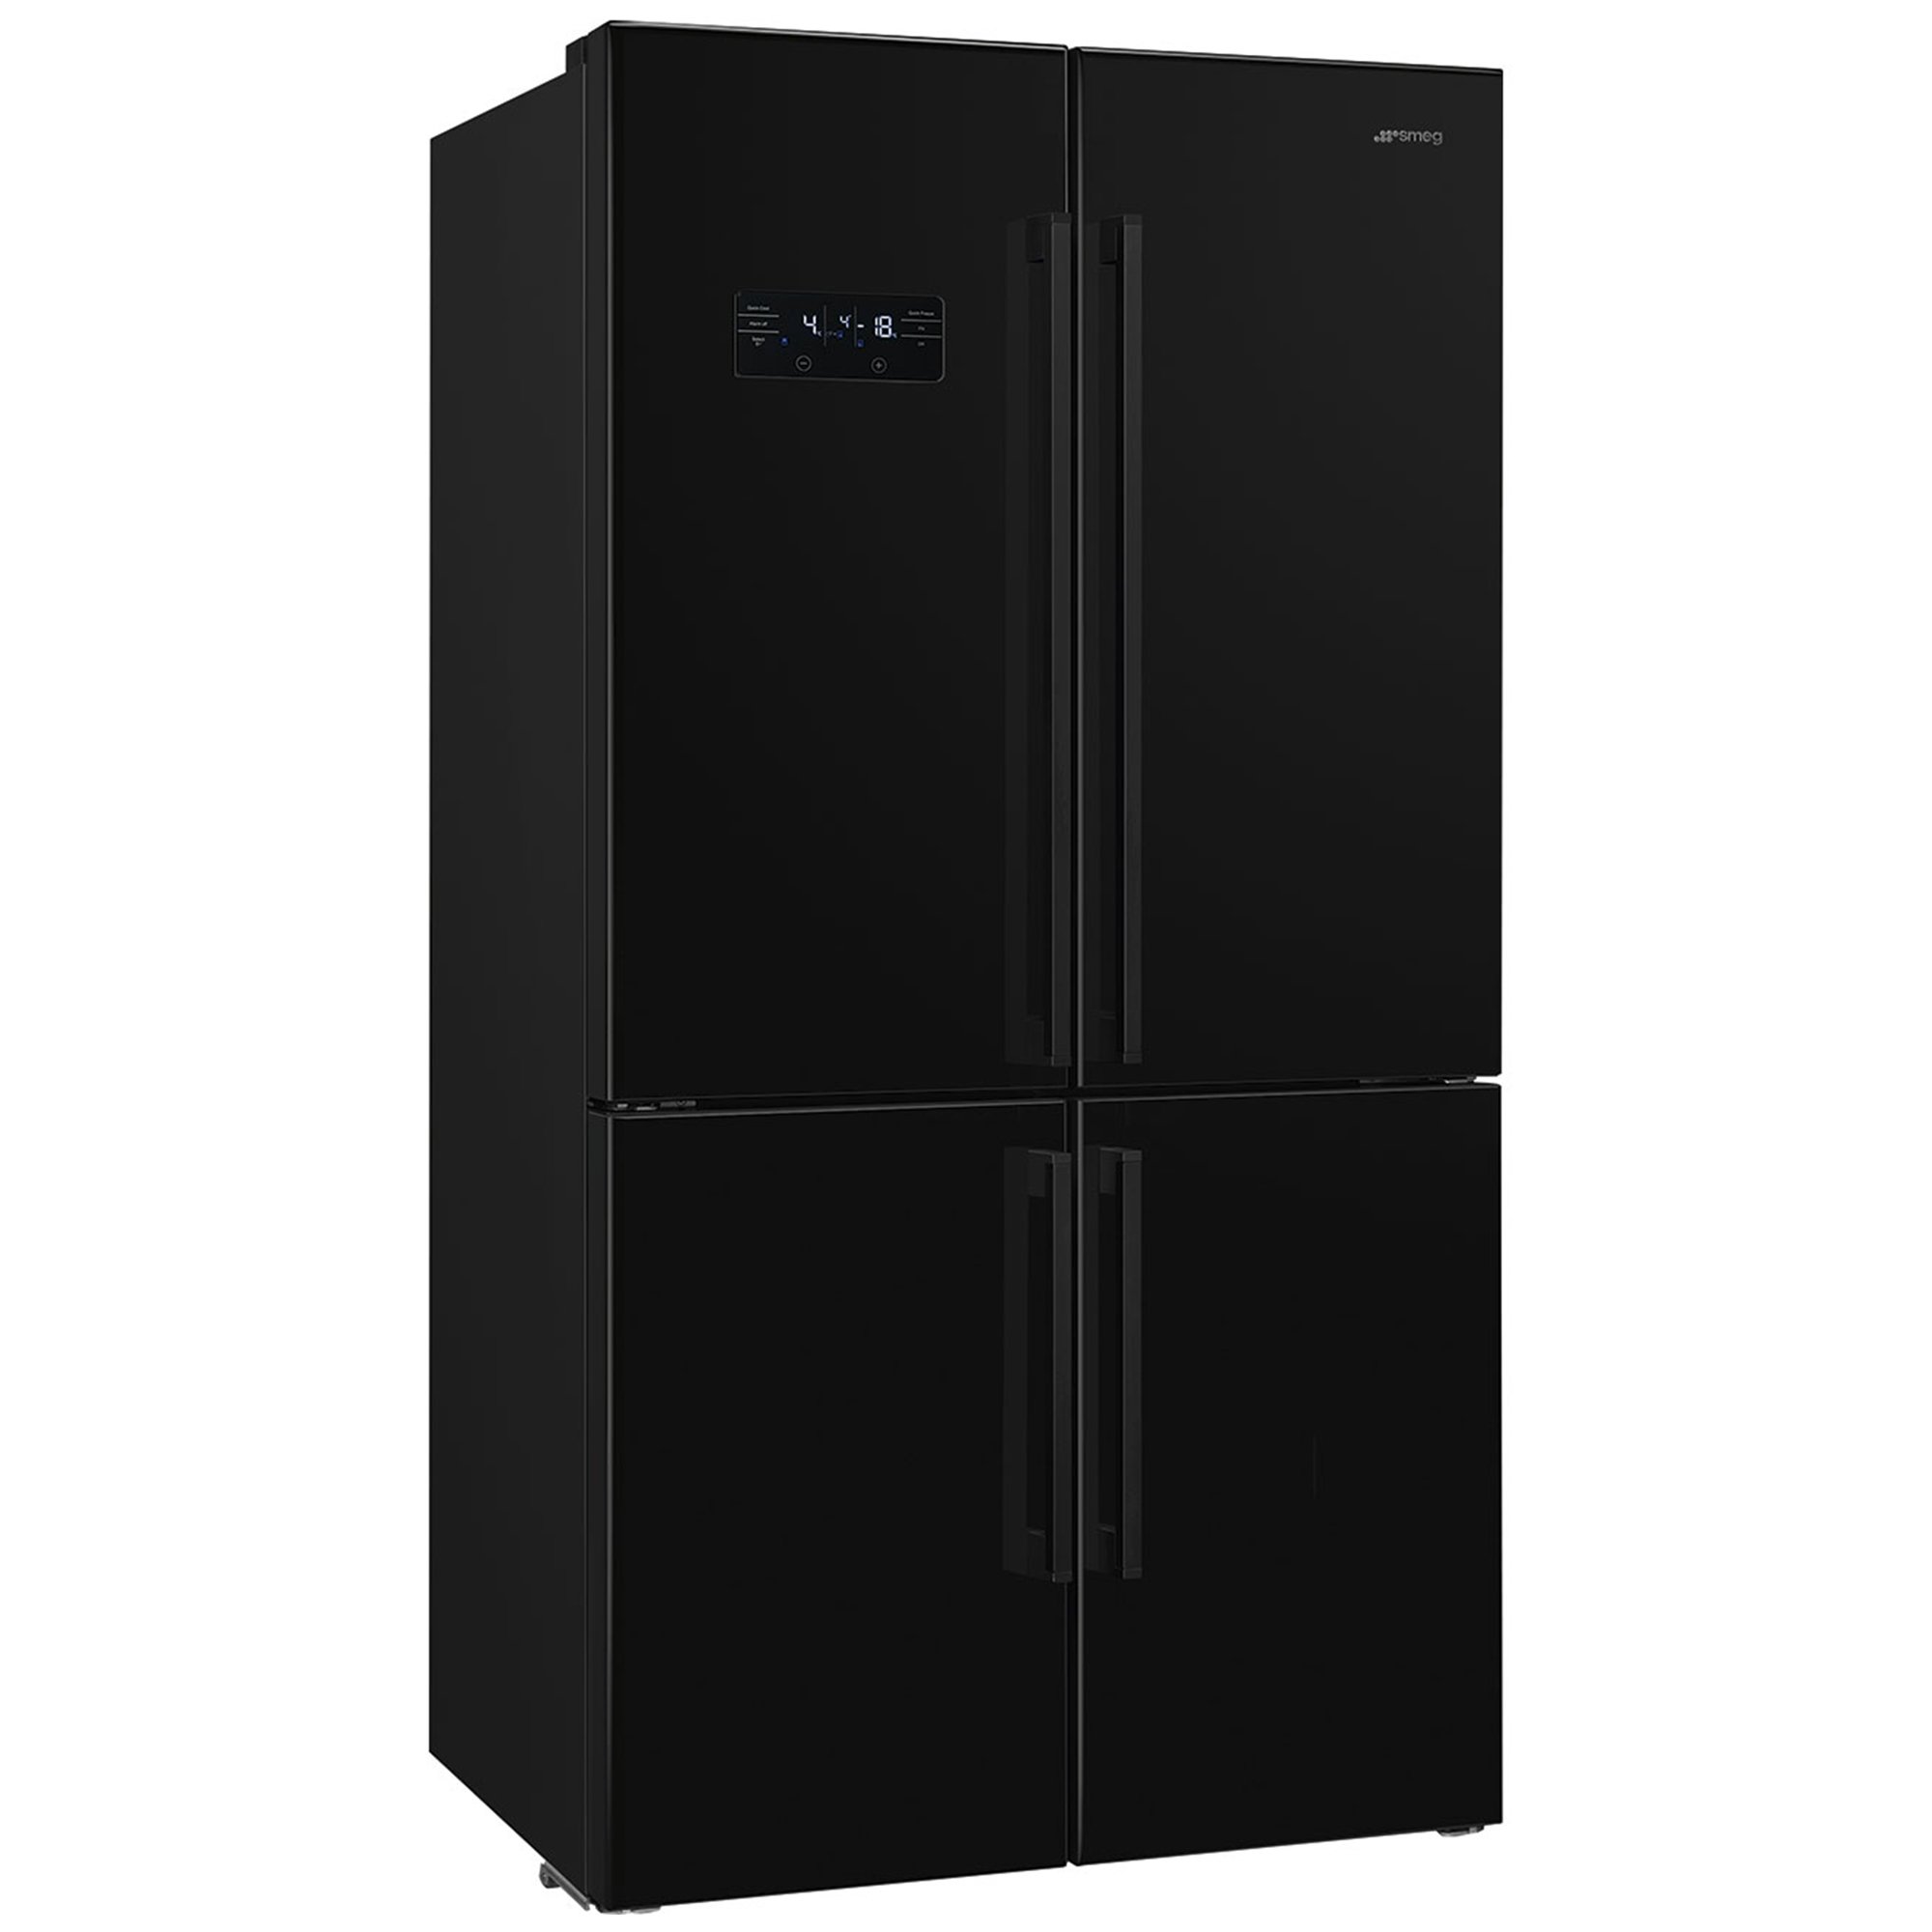 Smeg French Door kjøleskap/fryser 92 cm, svart